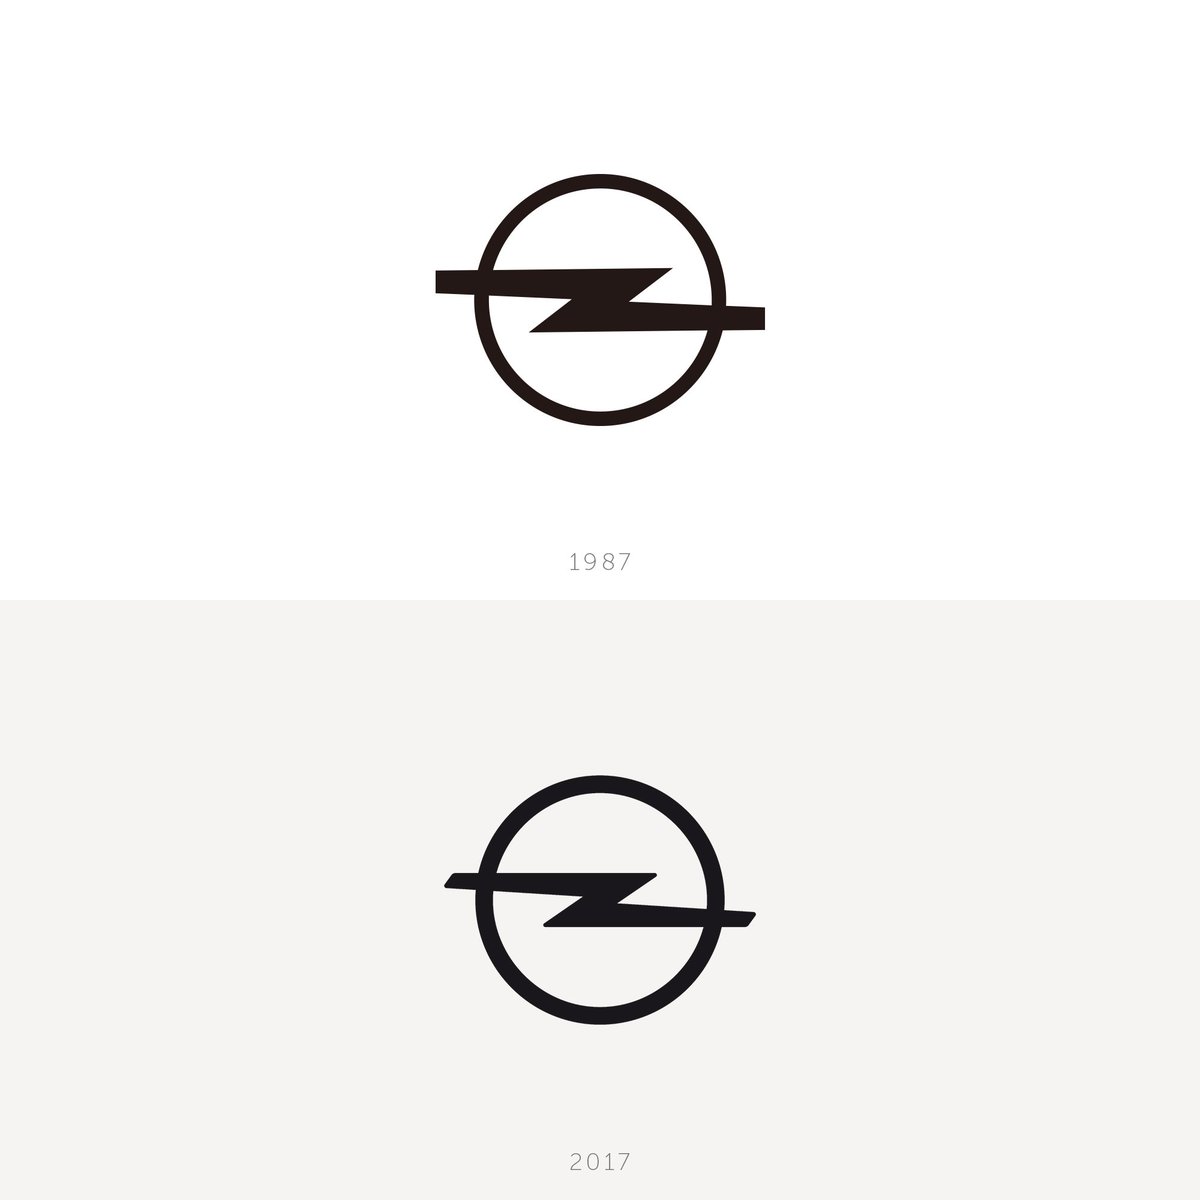 タカヤ オオタ Opelは旧ロゴをリファイン フラット化した結果 1980年代に同社が用いていたロゴに全体感が近しいのが 面白い Kodakも昨年 1980年代のロゴをベースにした新ロゴを発表している